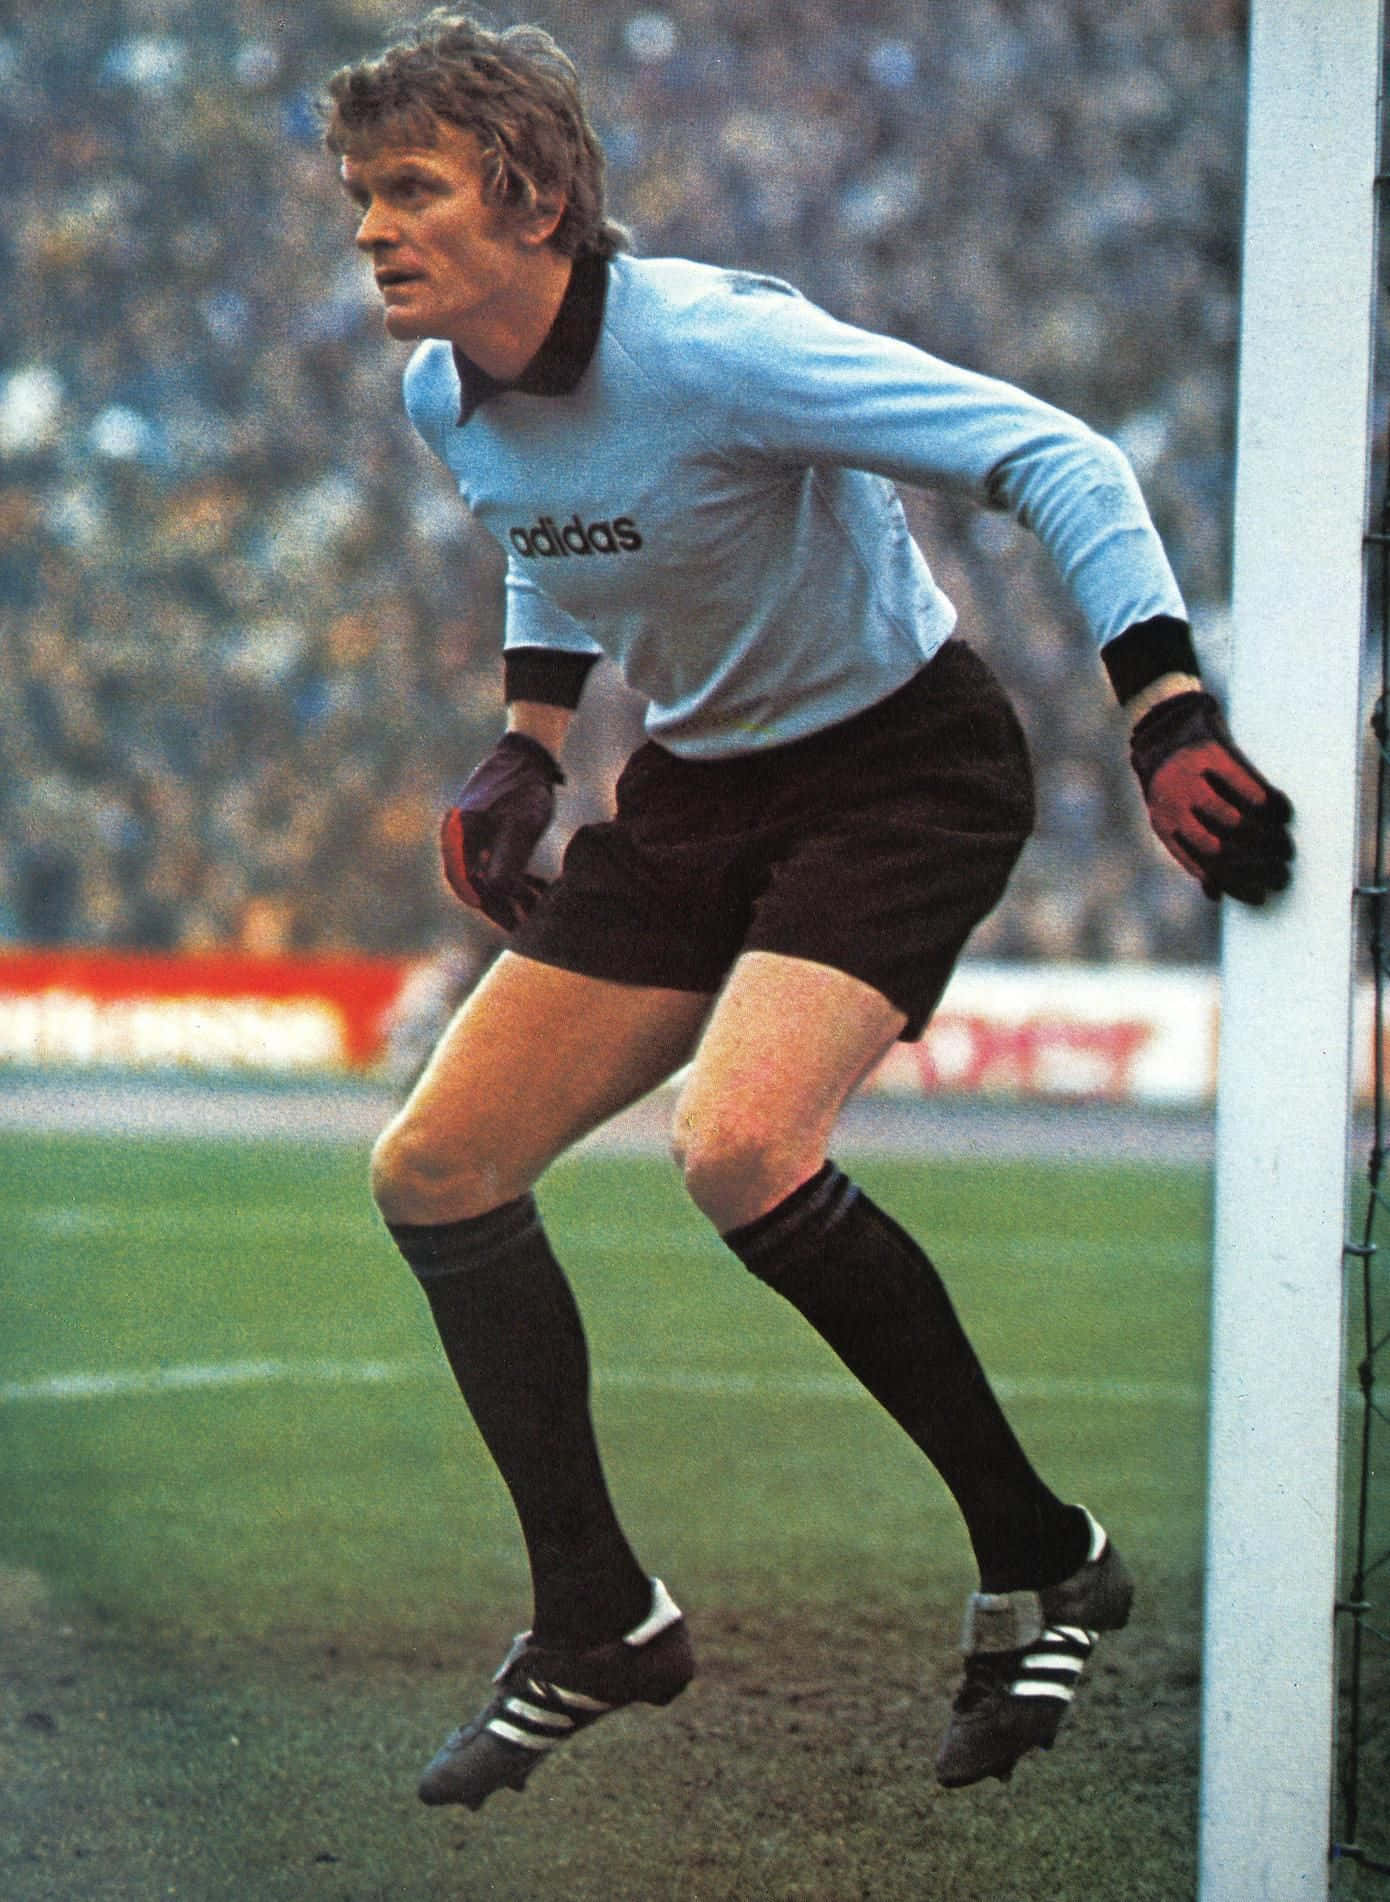 Ehemaligerprofessioneller Fußballtorwart Sepp Maier, Weltmeisterschaft 1974 Wallpaper